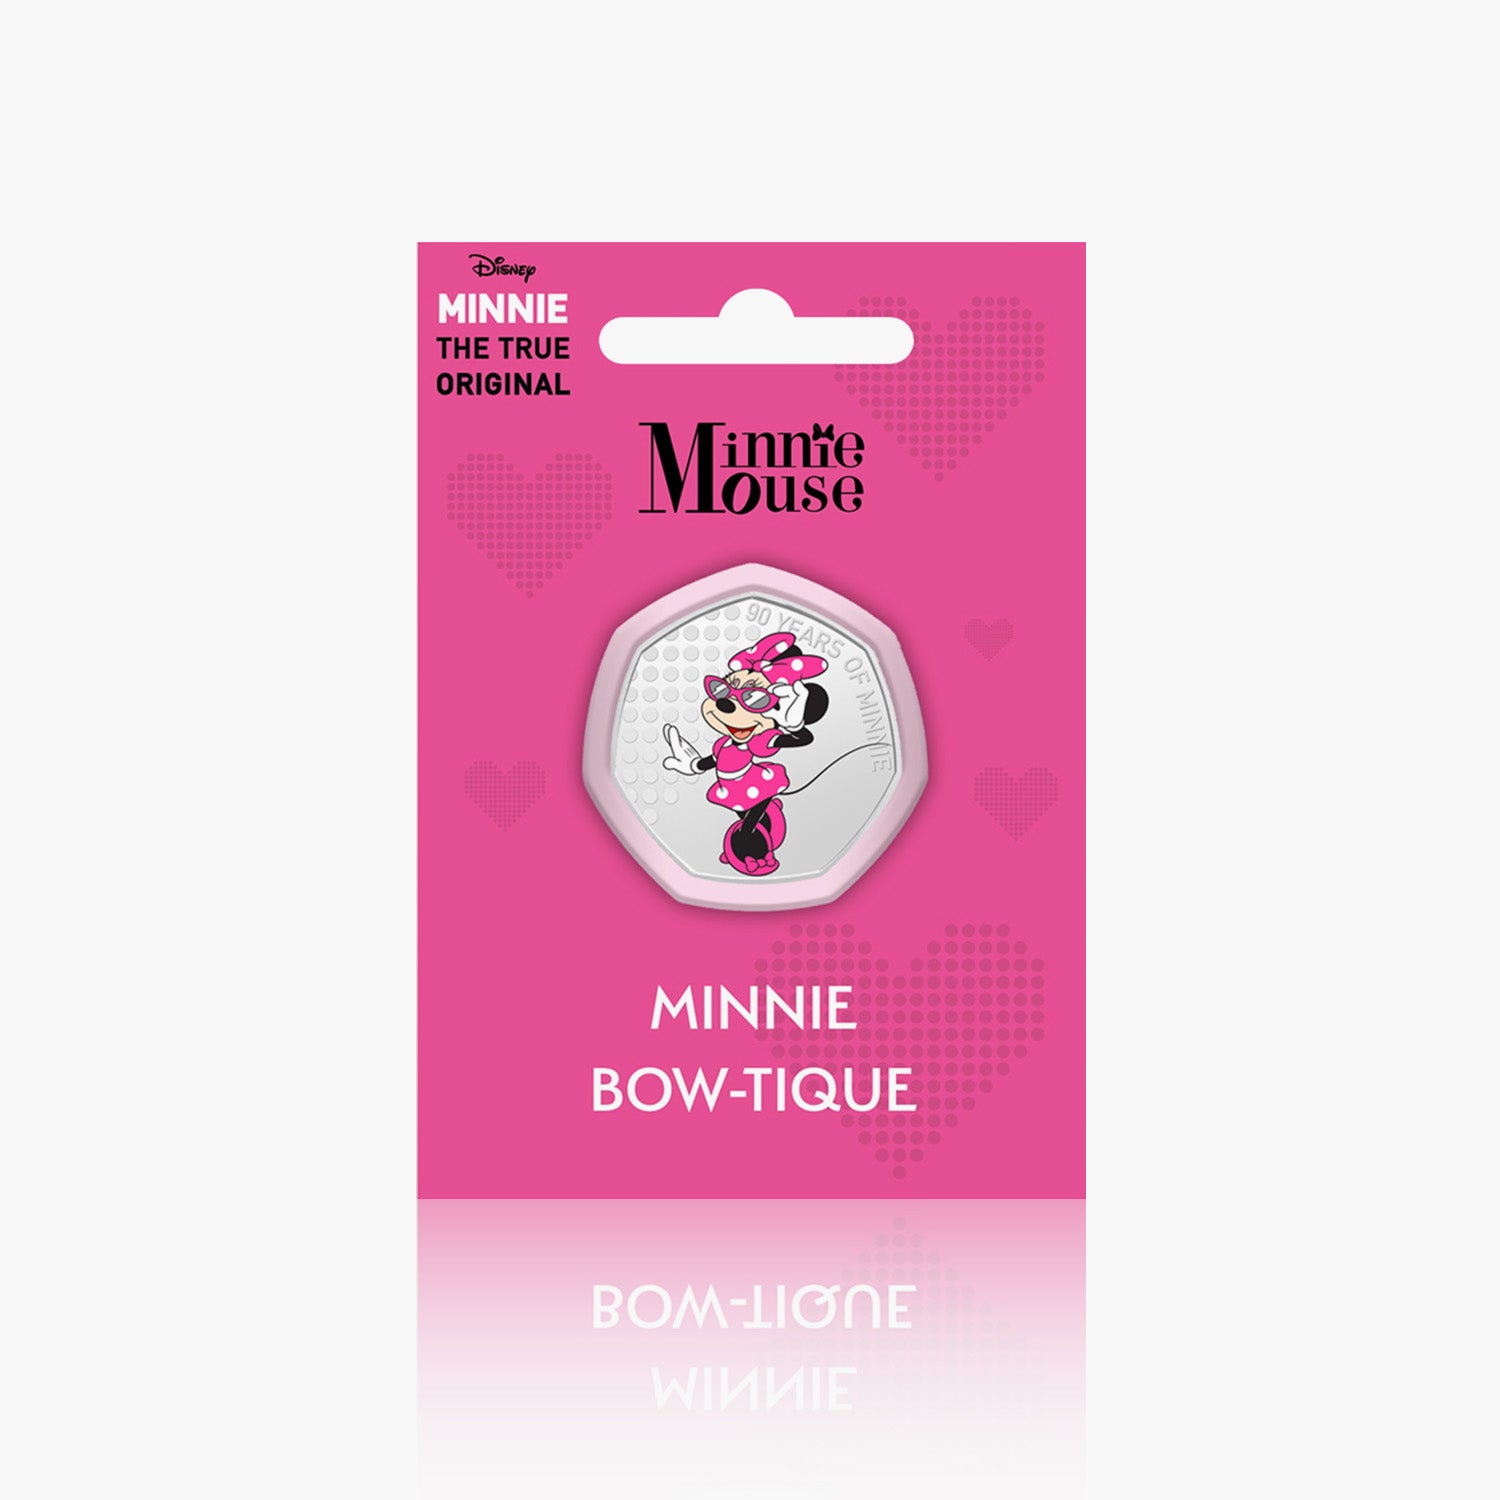 Minnie Bow-tique commémorative en plaqué argent